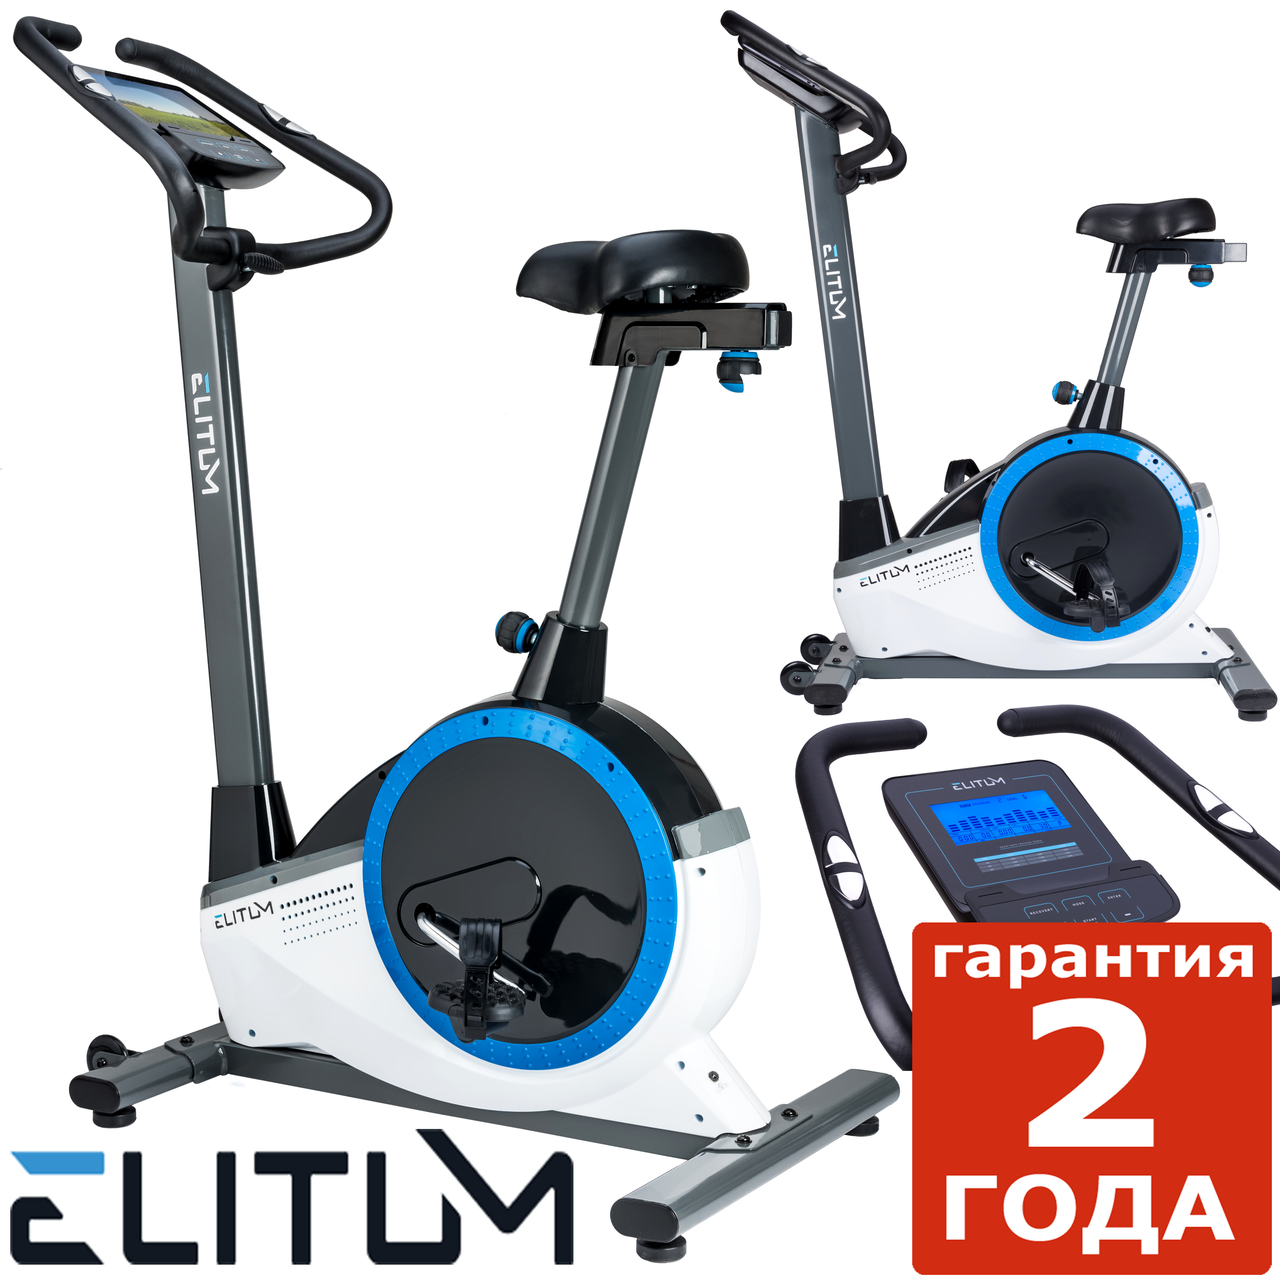 Електромагнітний велотренажер Elitum RX700 silver до 150 кг. Гарантія 24 міс.